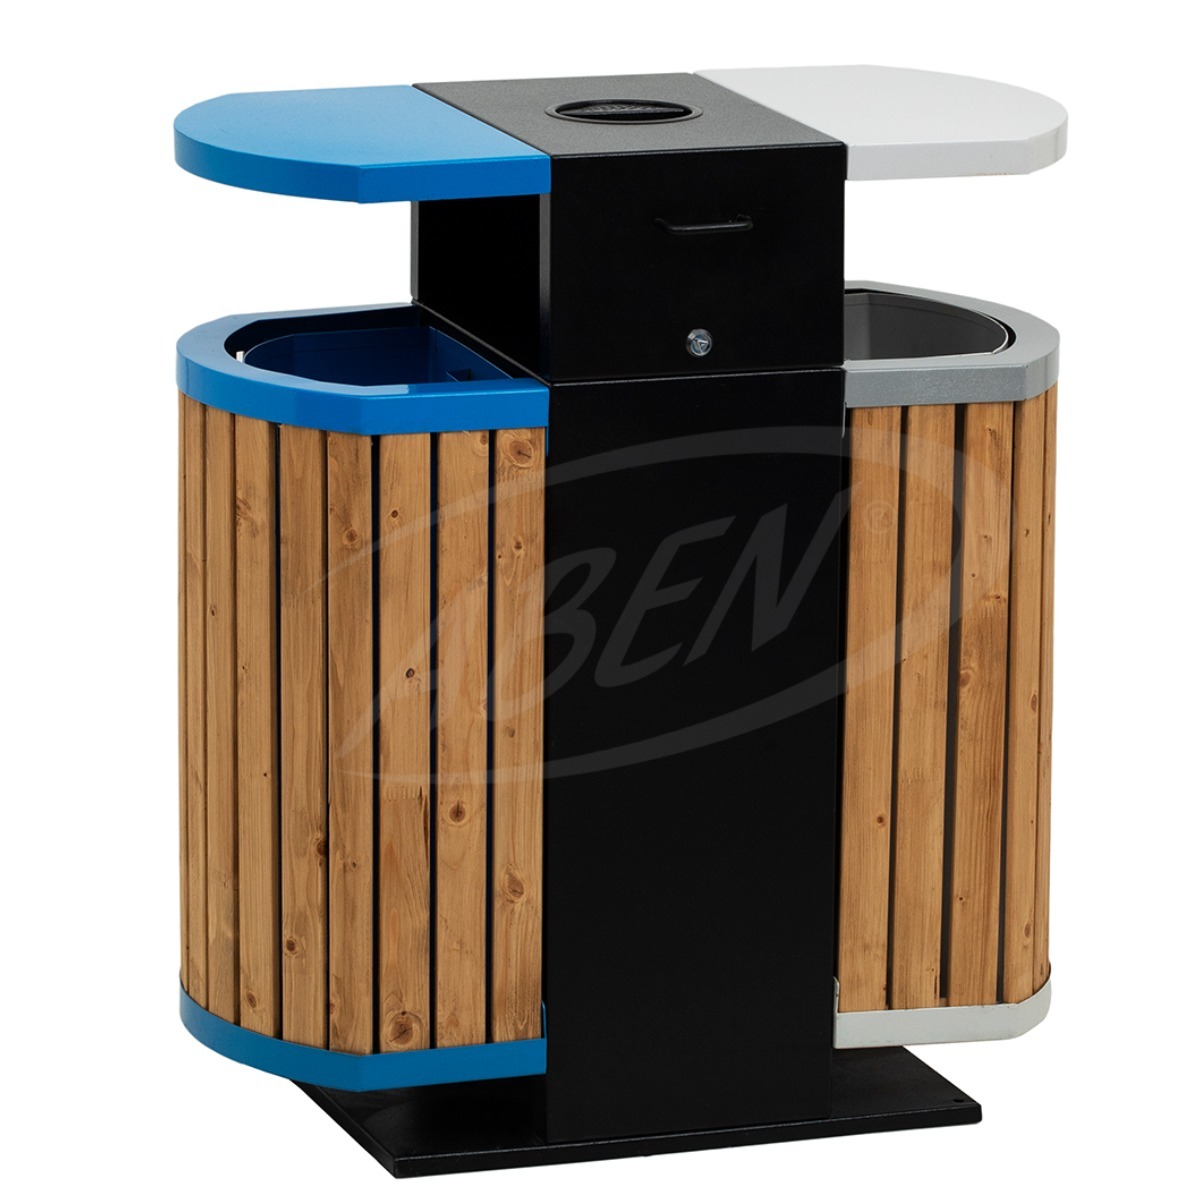 AB-521 Wood Open Space Trash Can adlı ürünün logosu